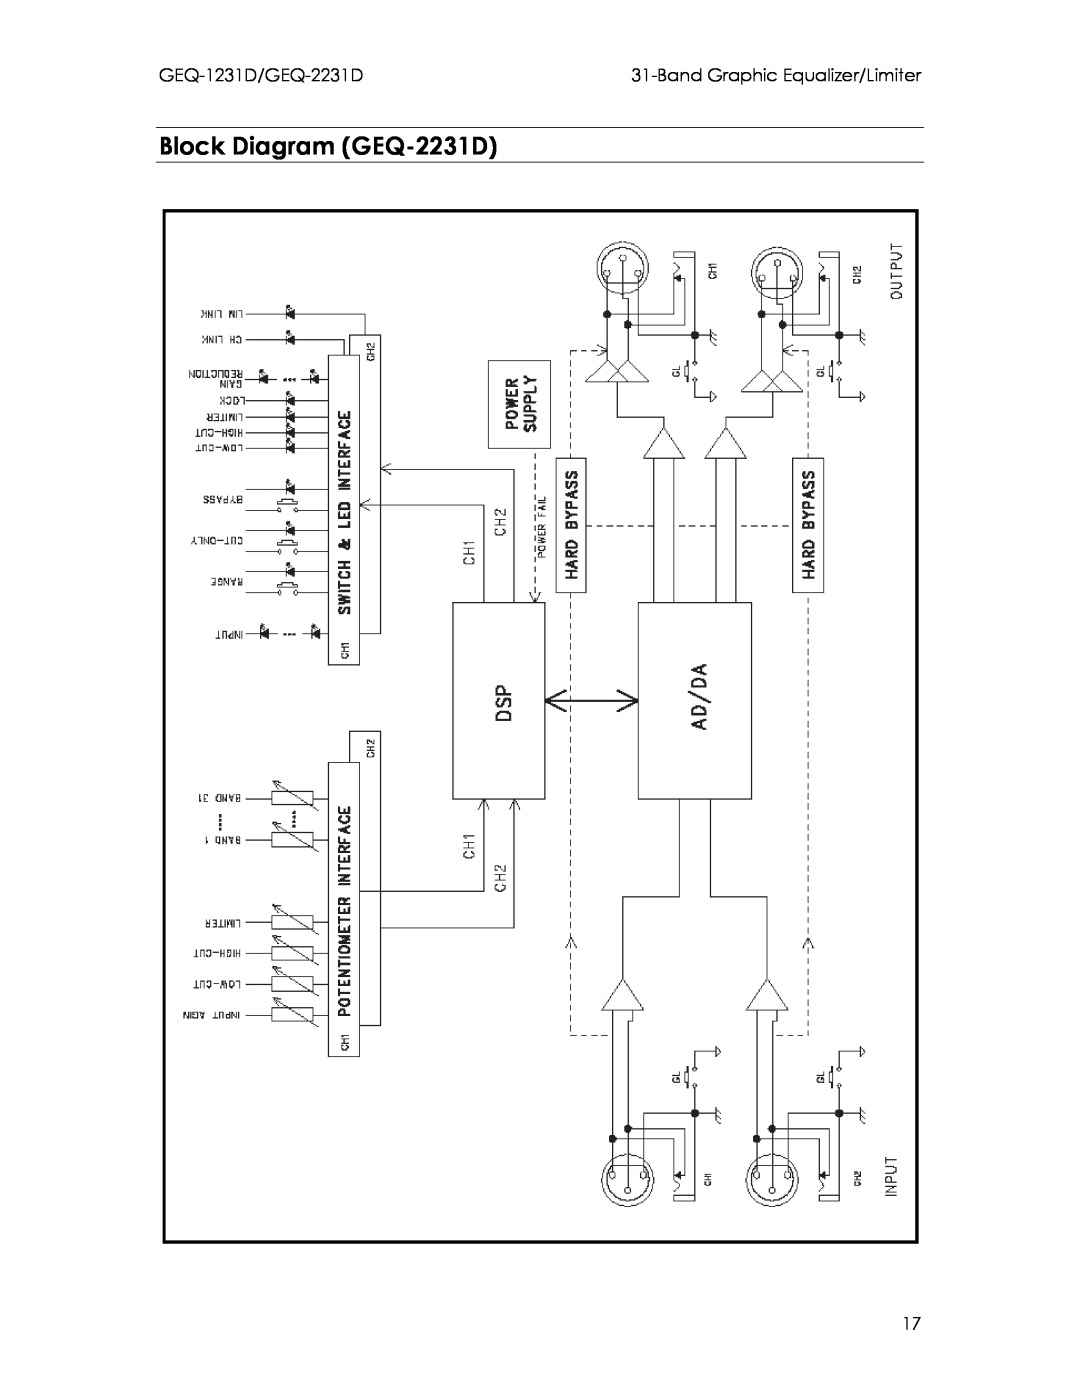 Intermec manual Block Diagram GEQ-2231D, GEQ-1231D/GEQ-2231D, BandGraphic Equalizer/Limiter 